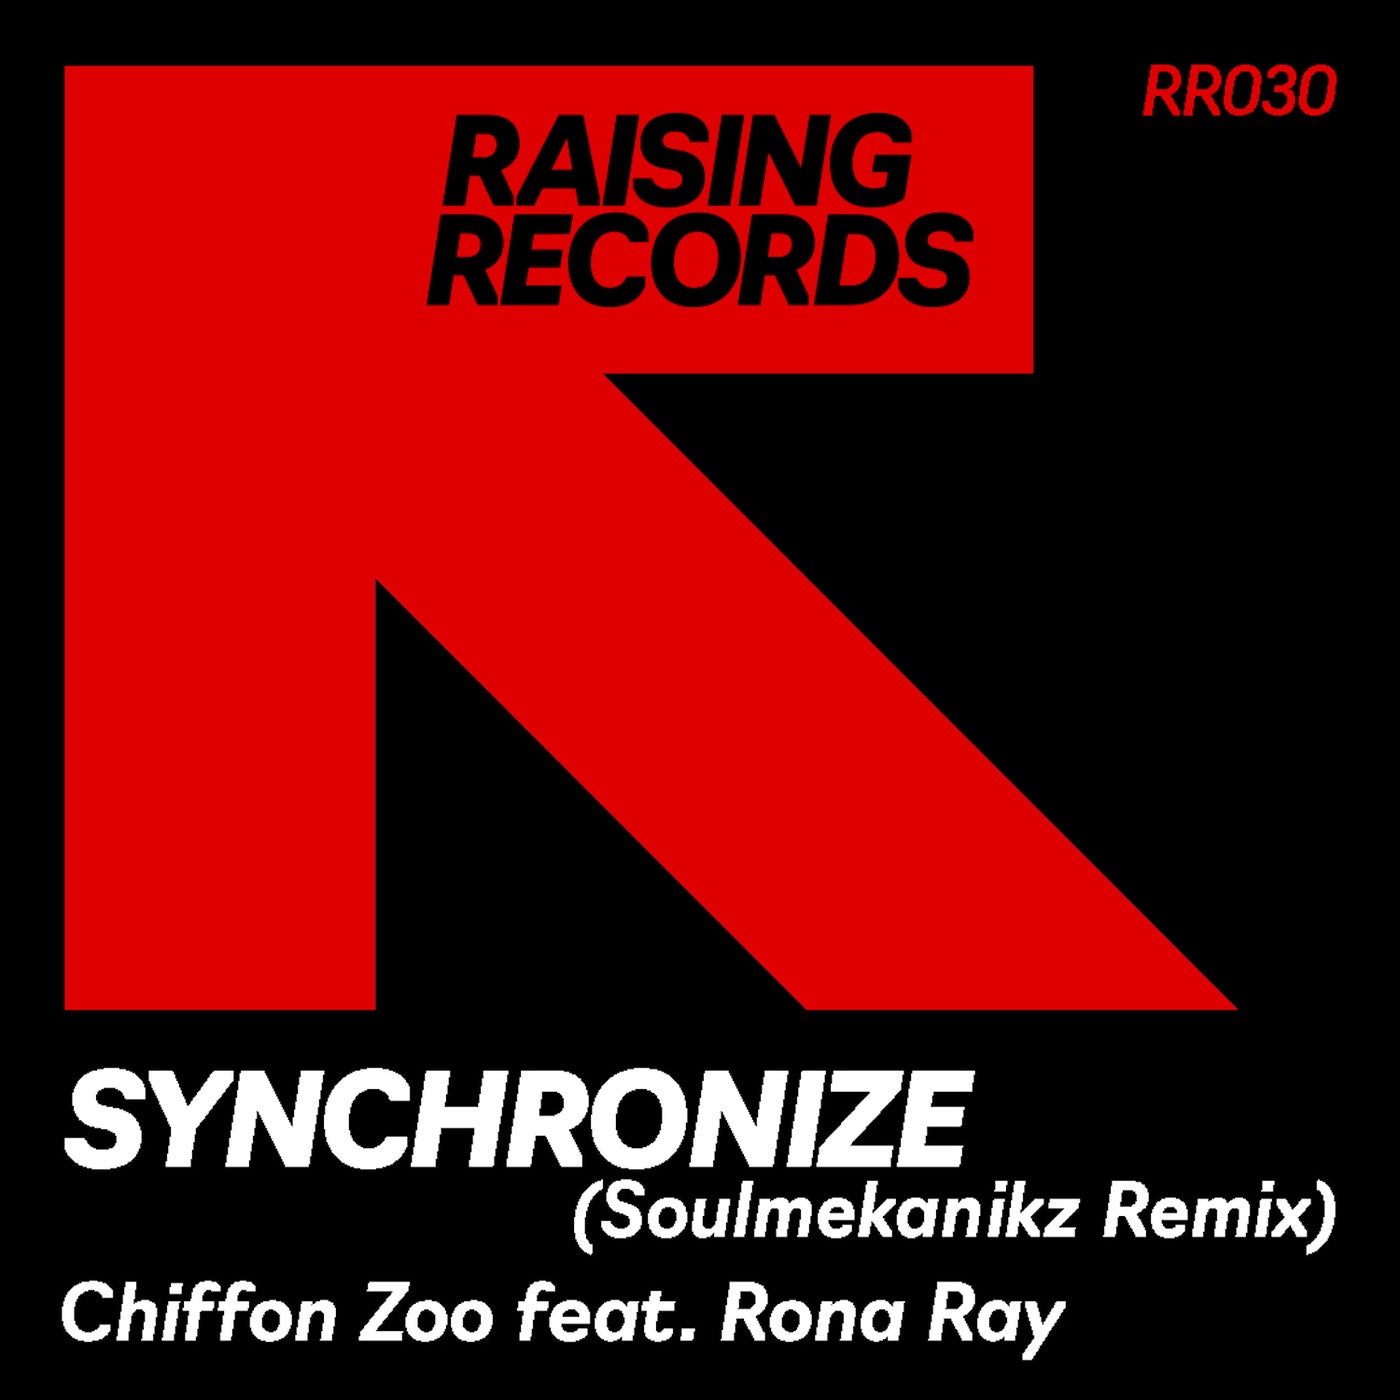 Synchronize (Soulmekanikz Remix)